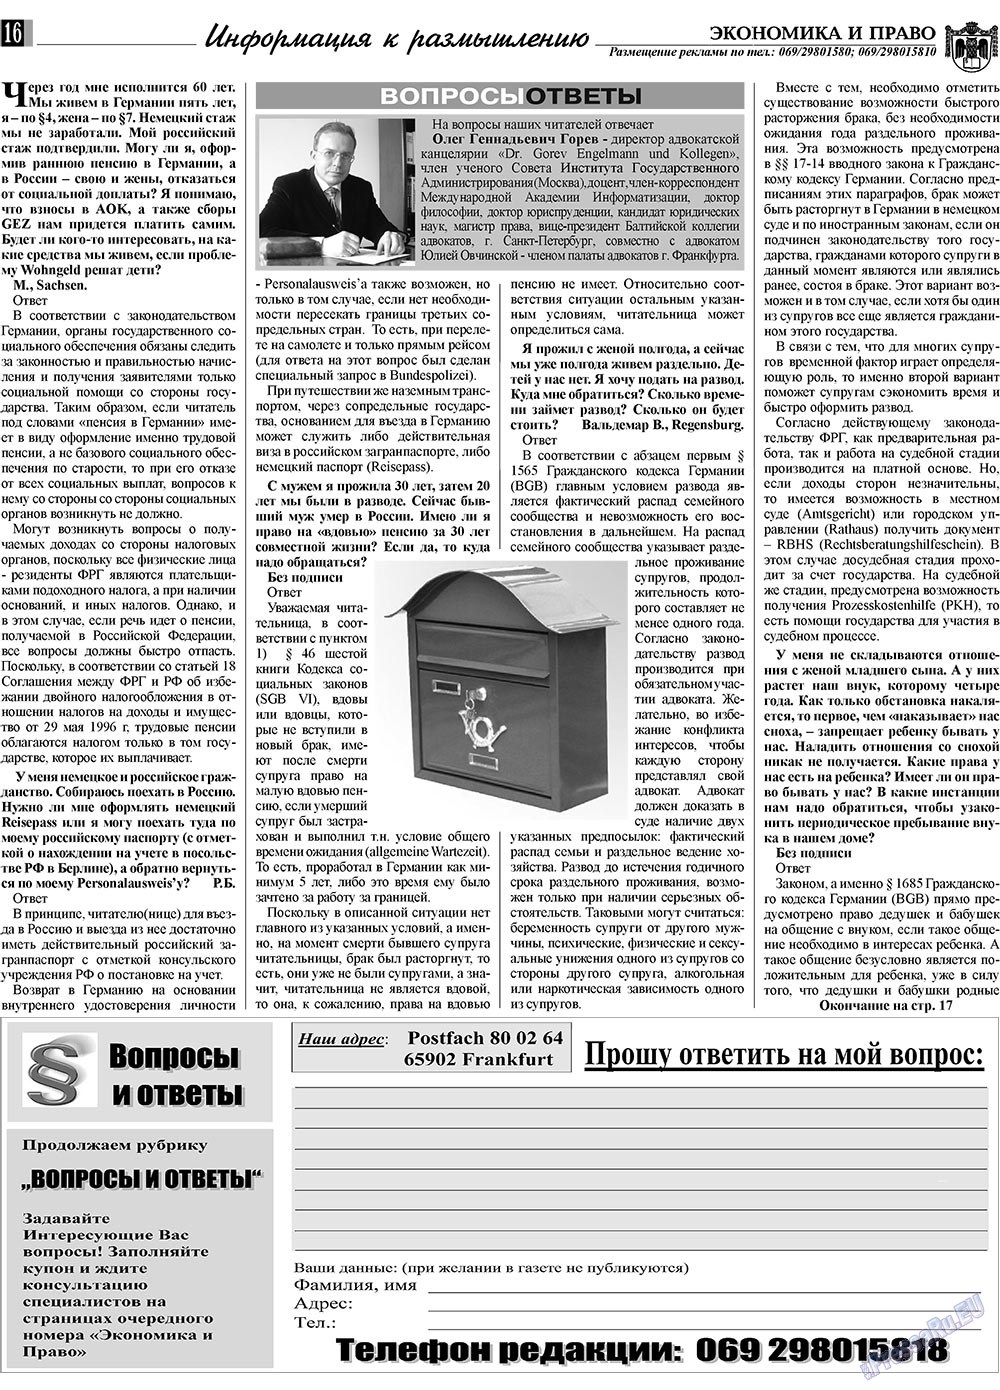 Экономика и право, газета. 2009 №2 стр.16